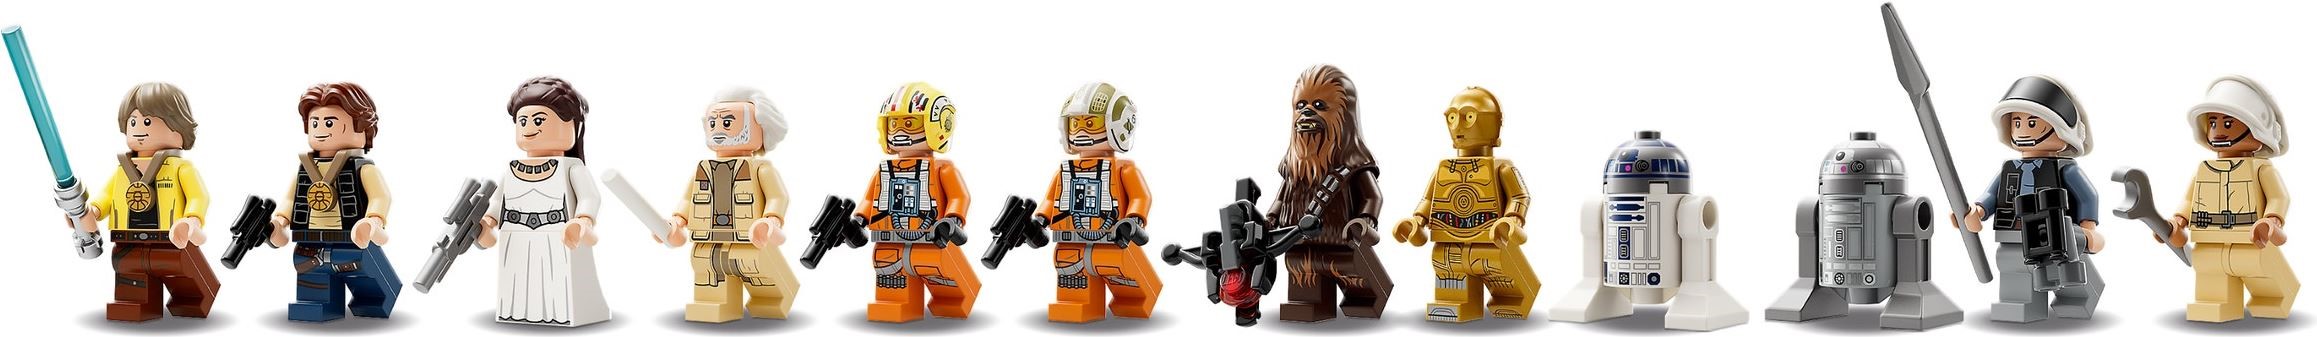 LEGO Star Wars 75365